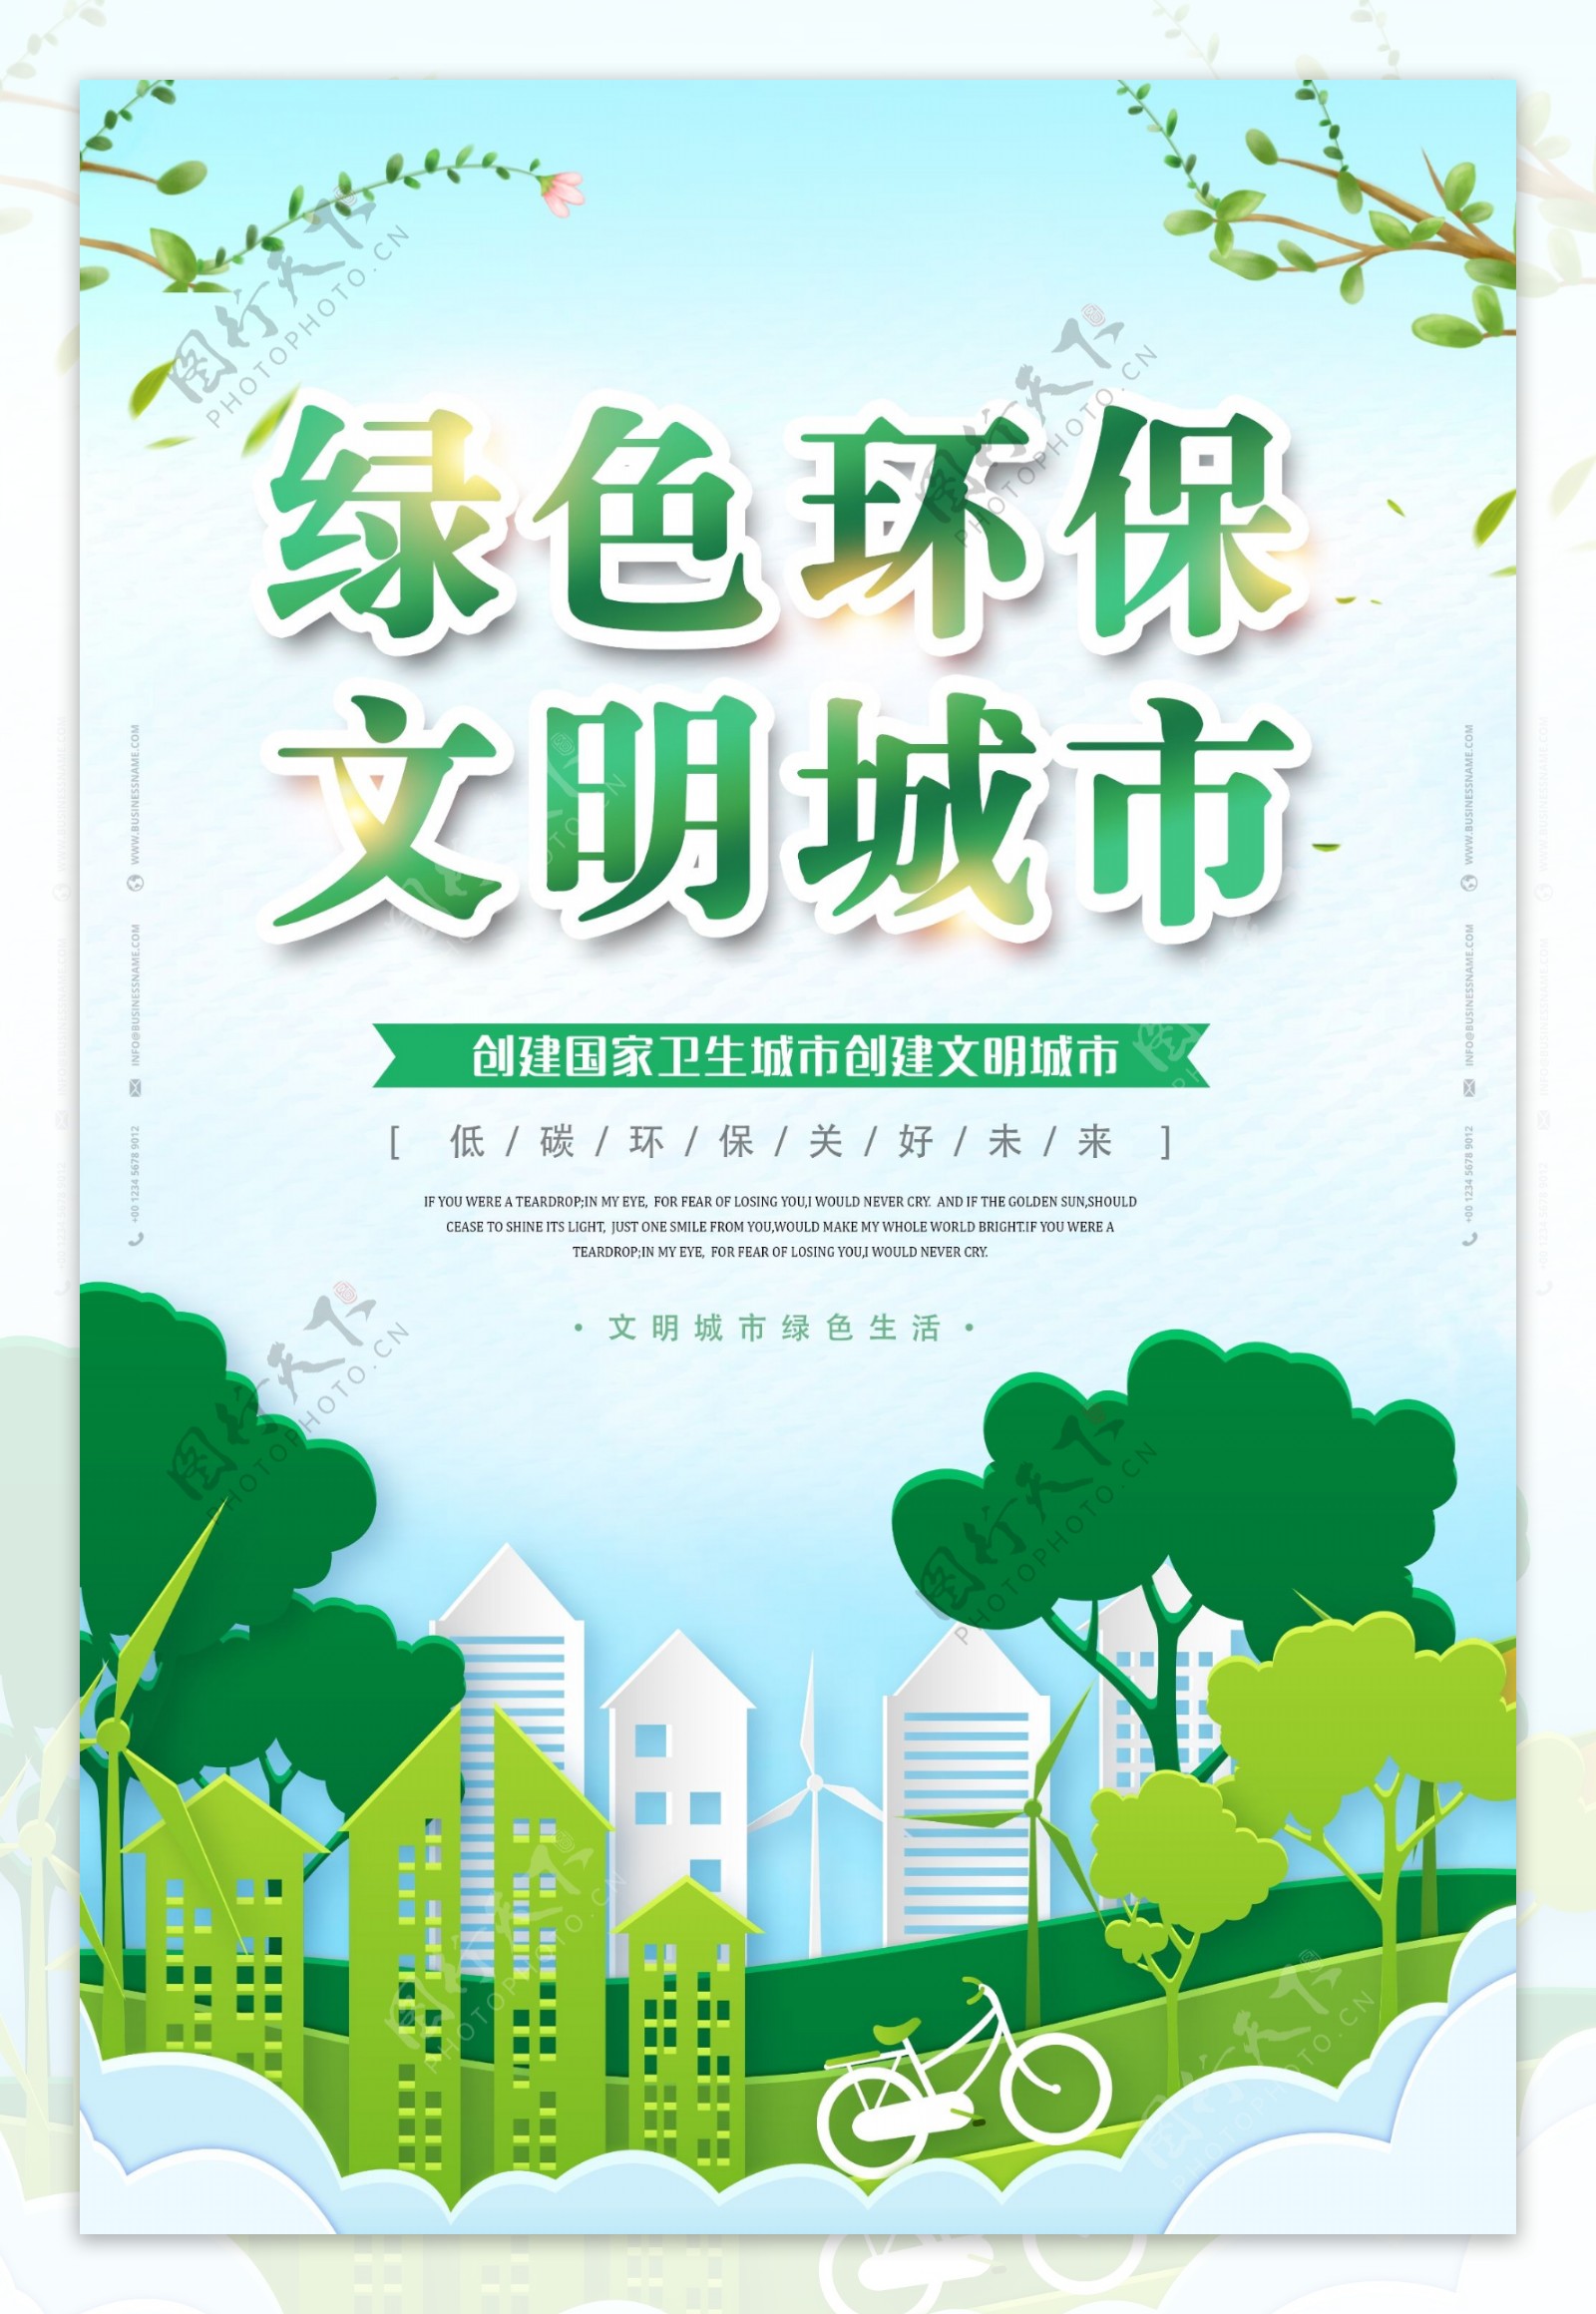 绿色环保城市公益宣传海报素材